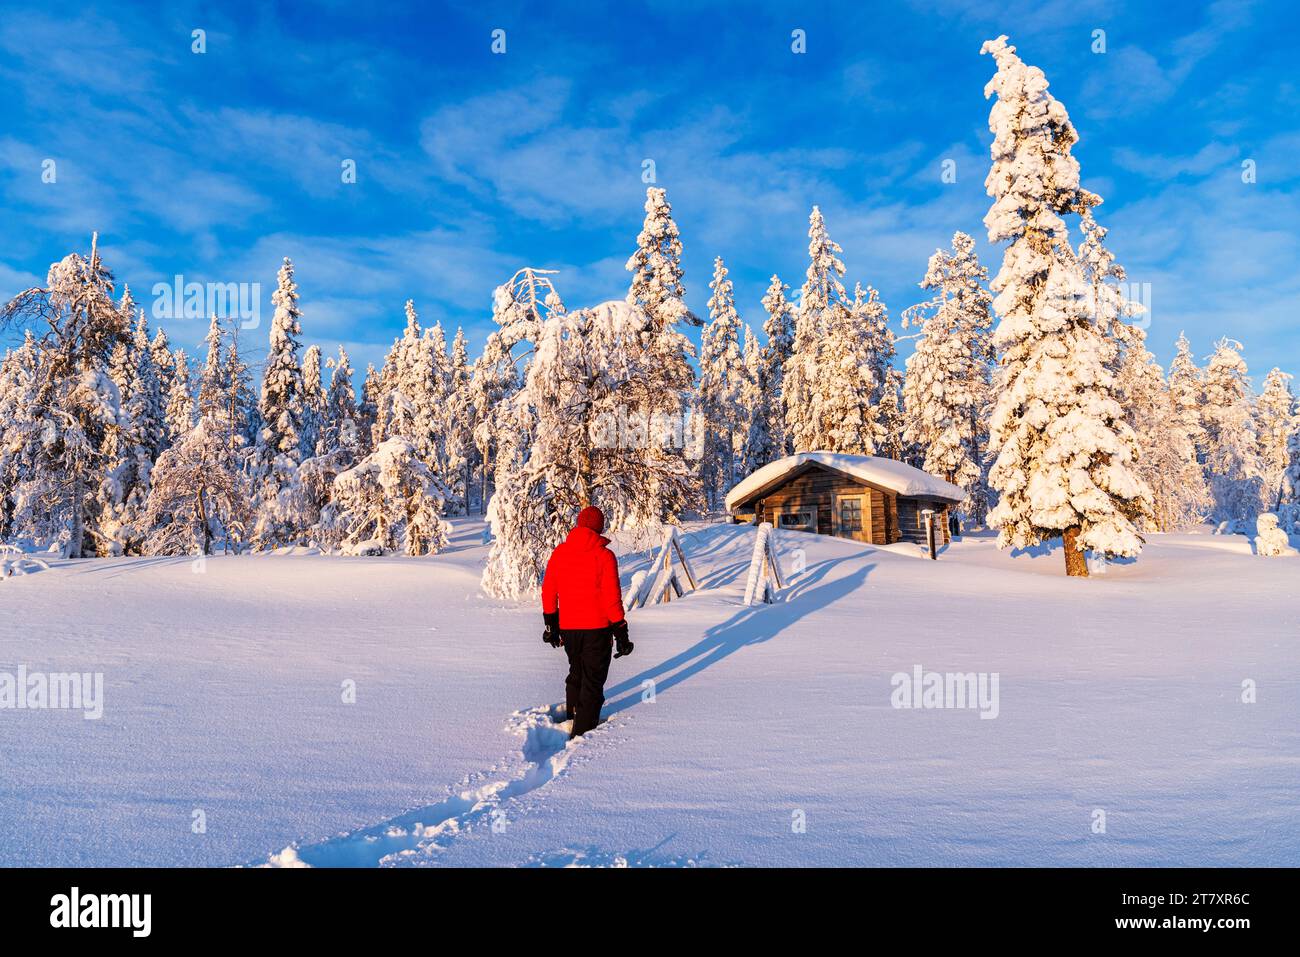 La persona si trova di fronte a un rifugio isolato tra alberi ricoperti di neve, Lapponia svedese, Norrbotten, Svezia, Scandinavia, Europa Foto Stock